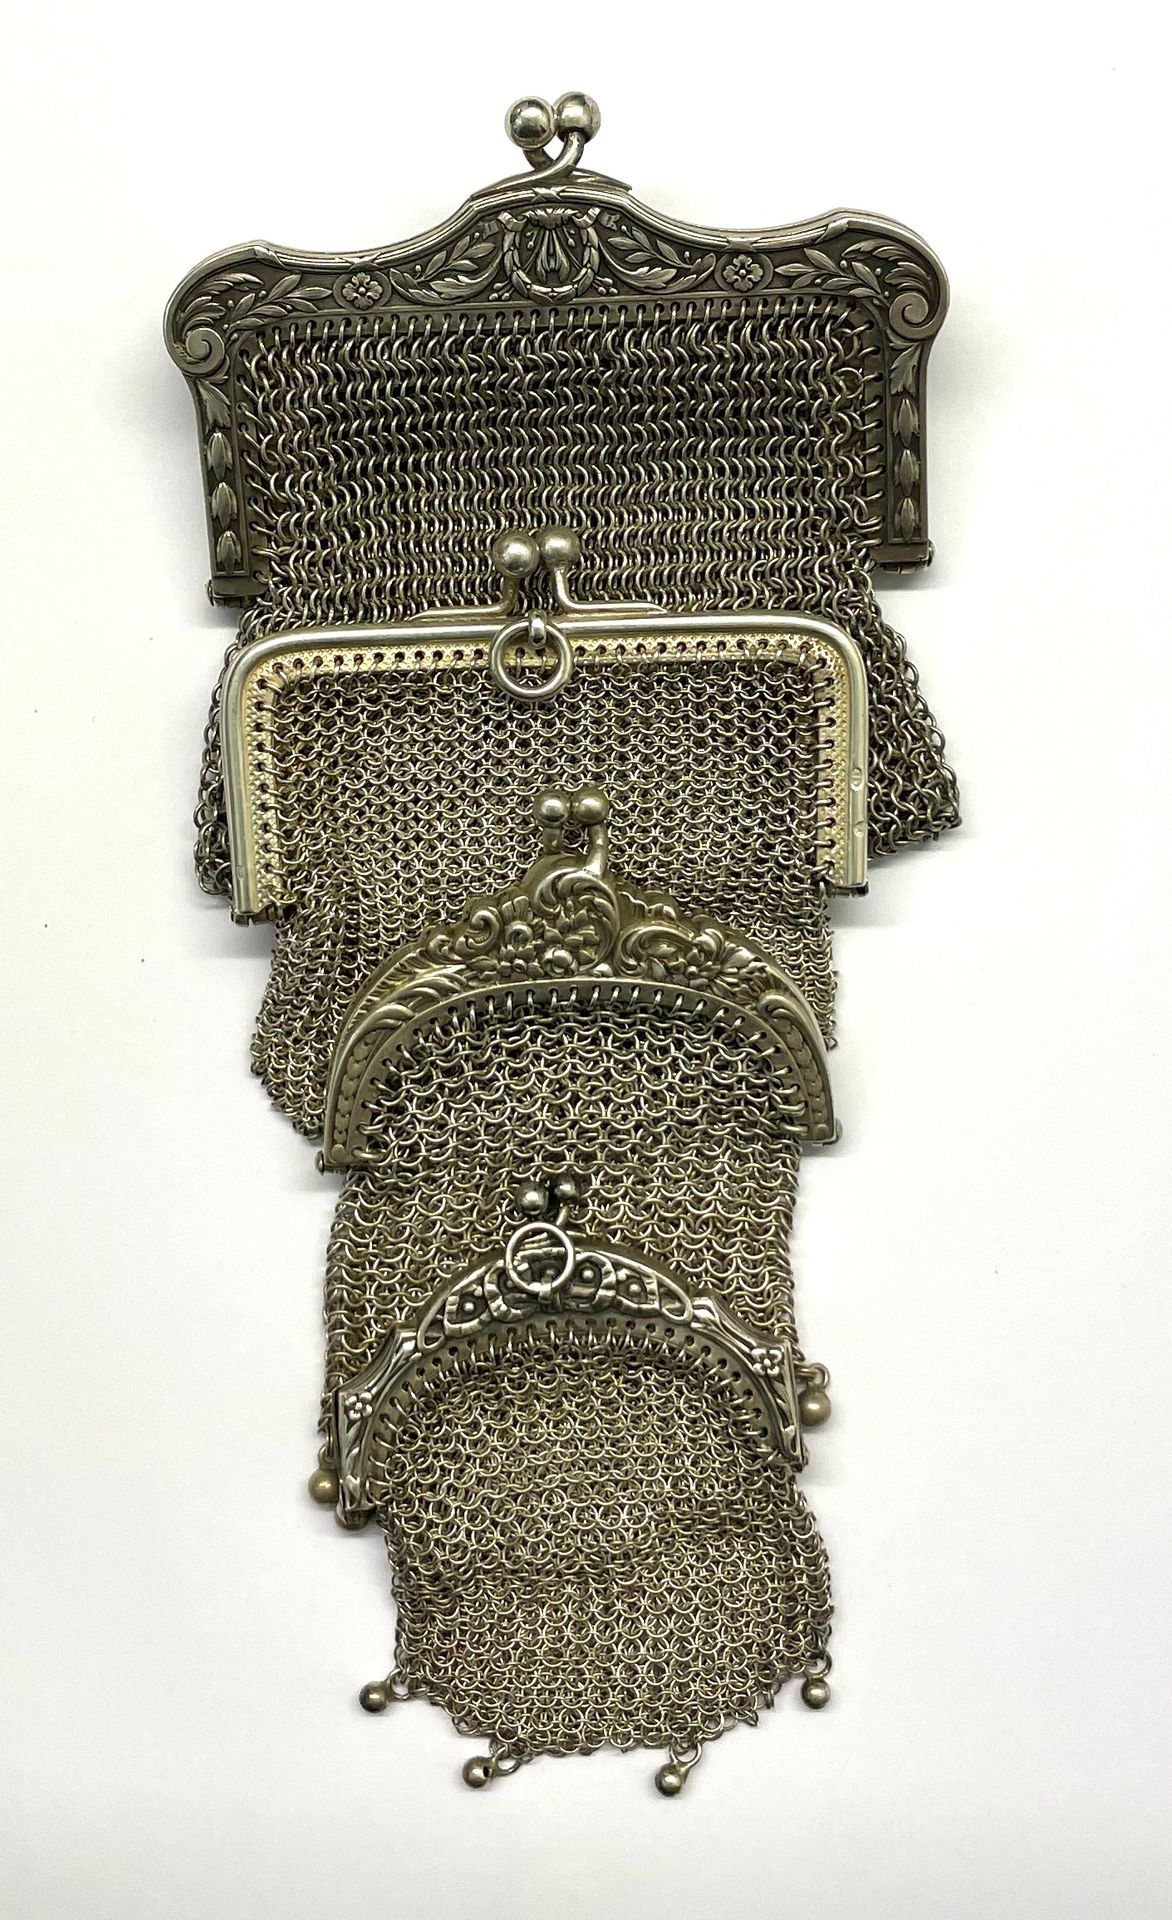 Null 一套四个带夹子开口的网状钱包，大部分都带着追逐的卷轴和花环，以流苏结束。

各种尺寸

毛重：158克

材质 : 银色

状态 : 完好